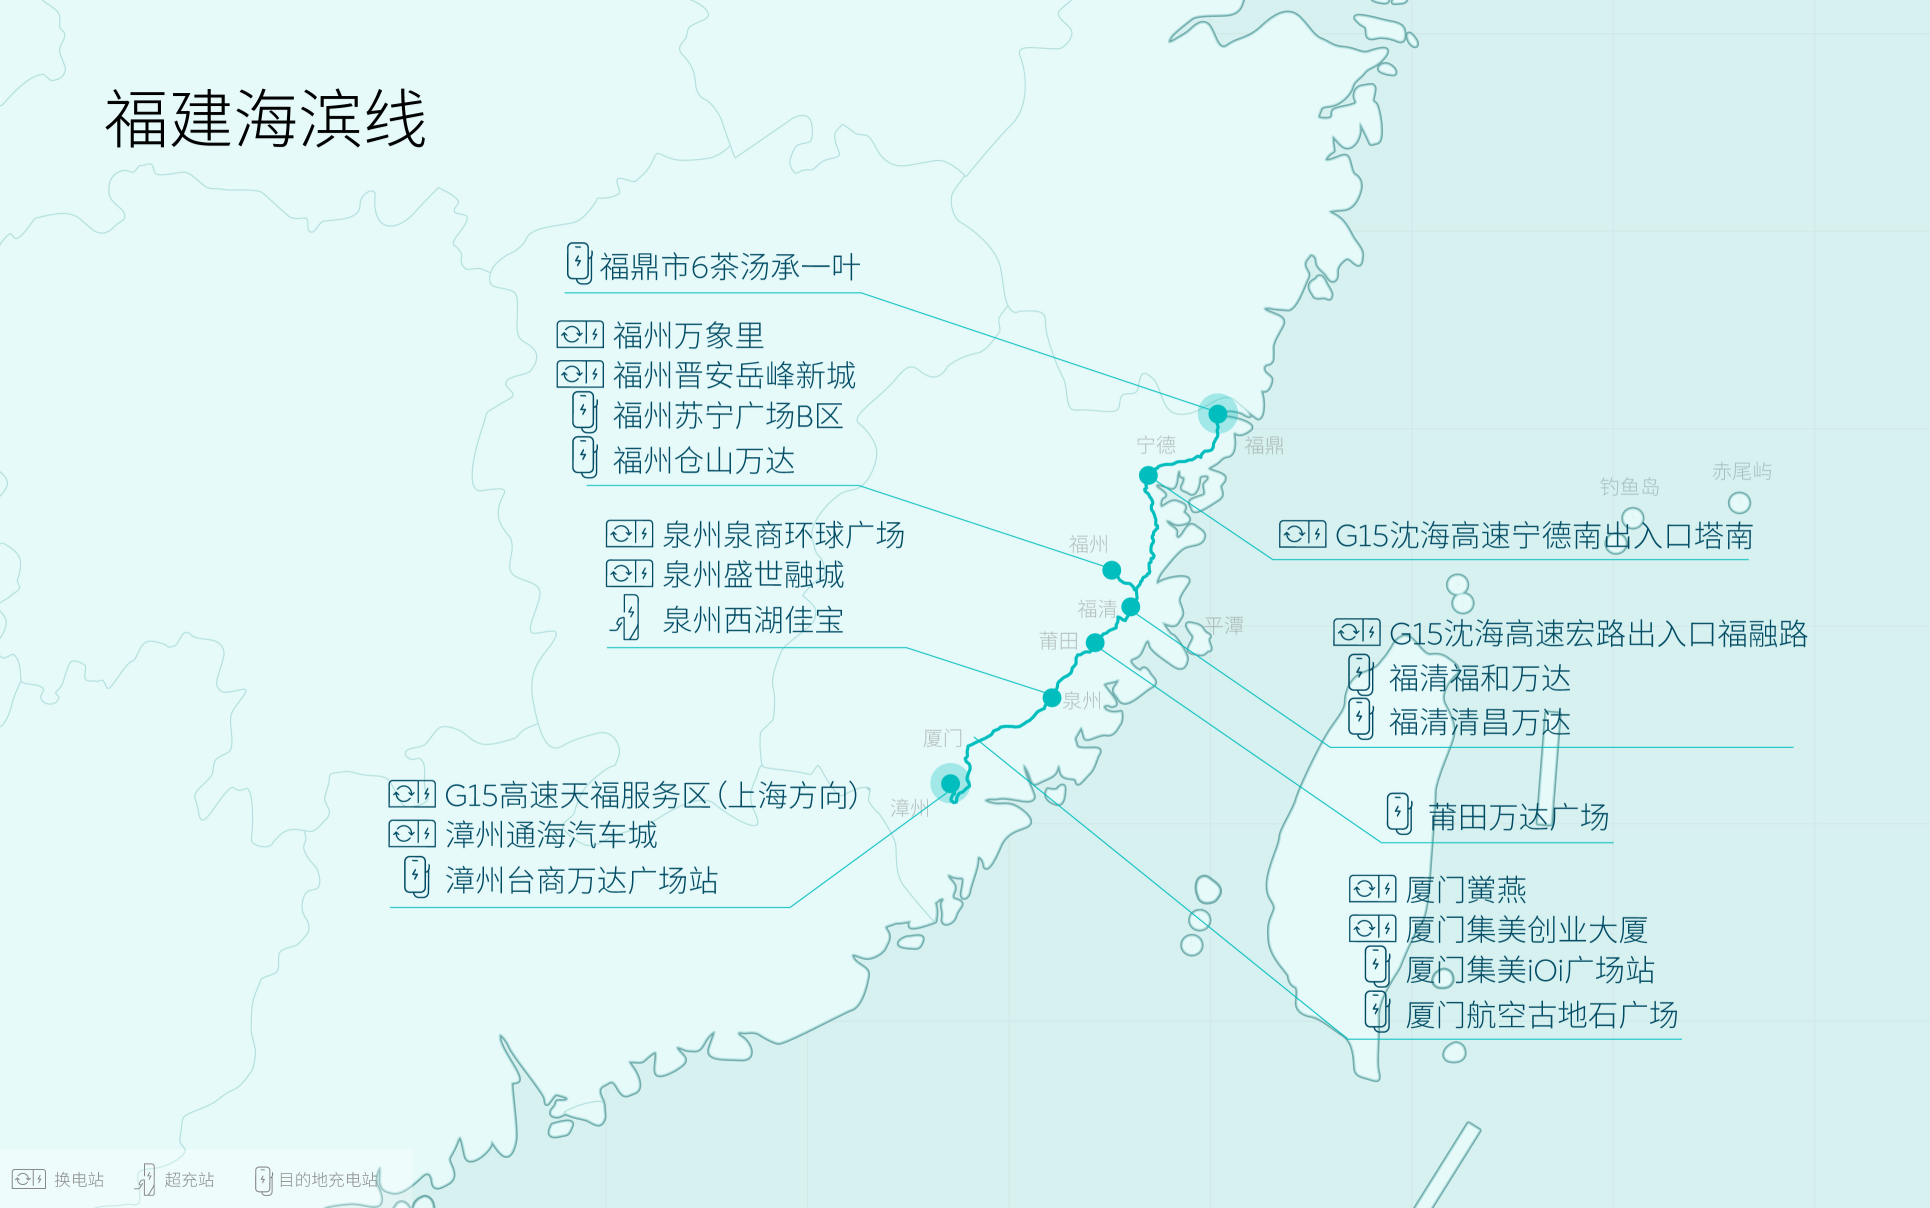 NIO открыла маршруты зарядки и замены вдоль побережья Фуцзянь/Юньнань и Тибета, сделав еще один шаг вперед по замене аккумуляторов!